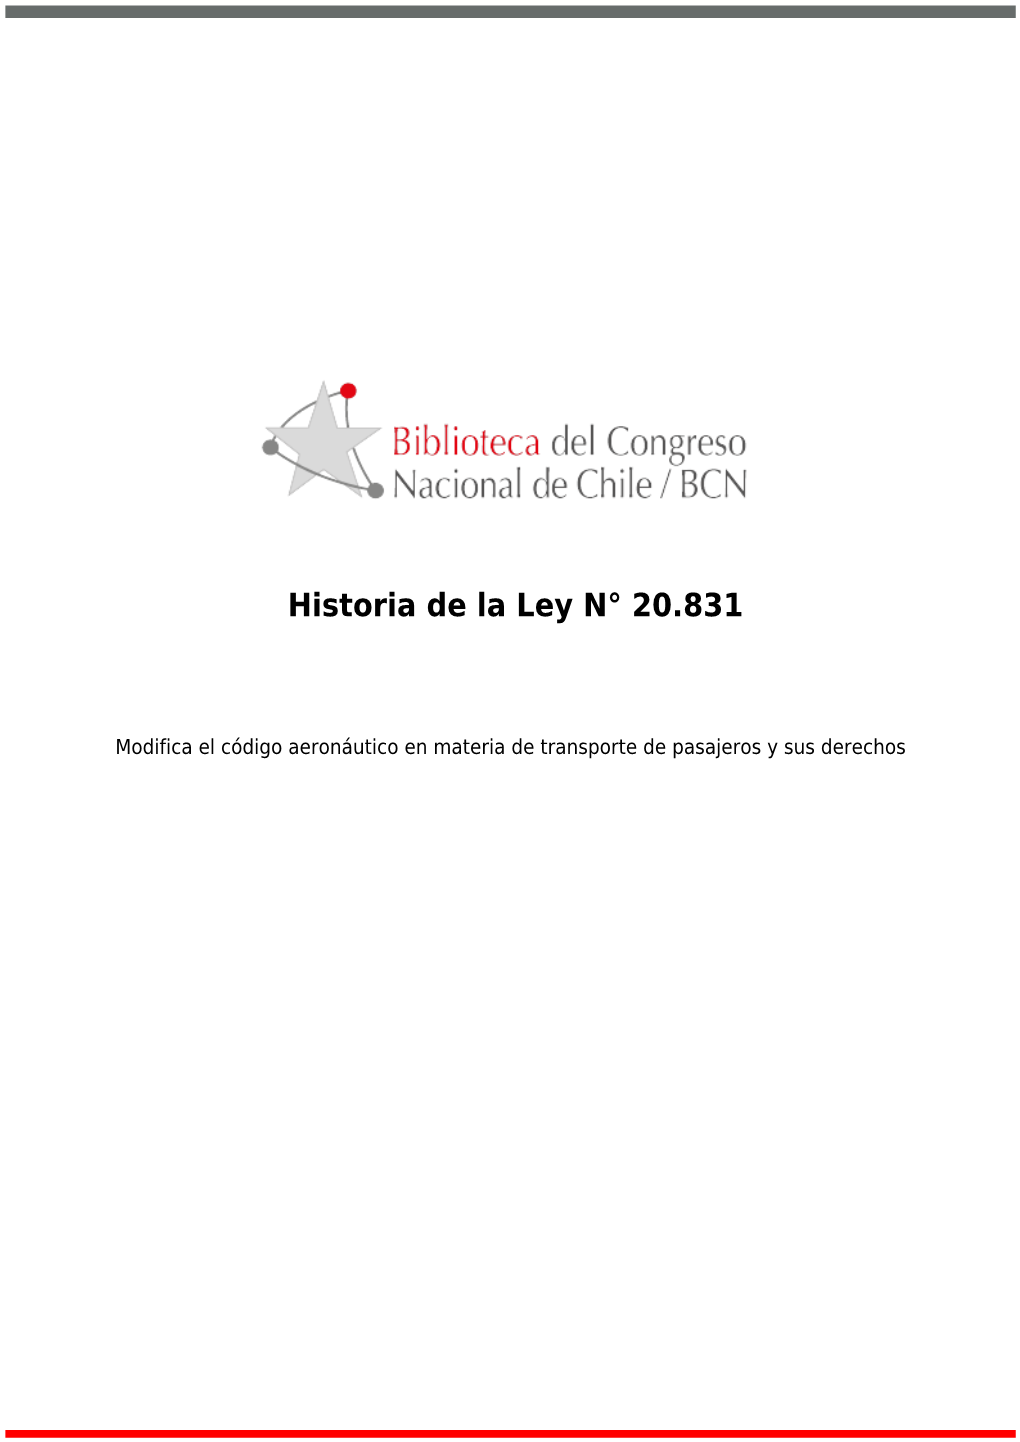 Historia De La Ley N° 20.831